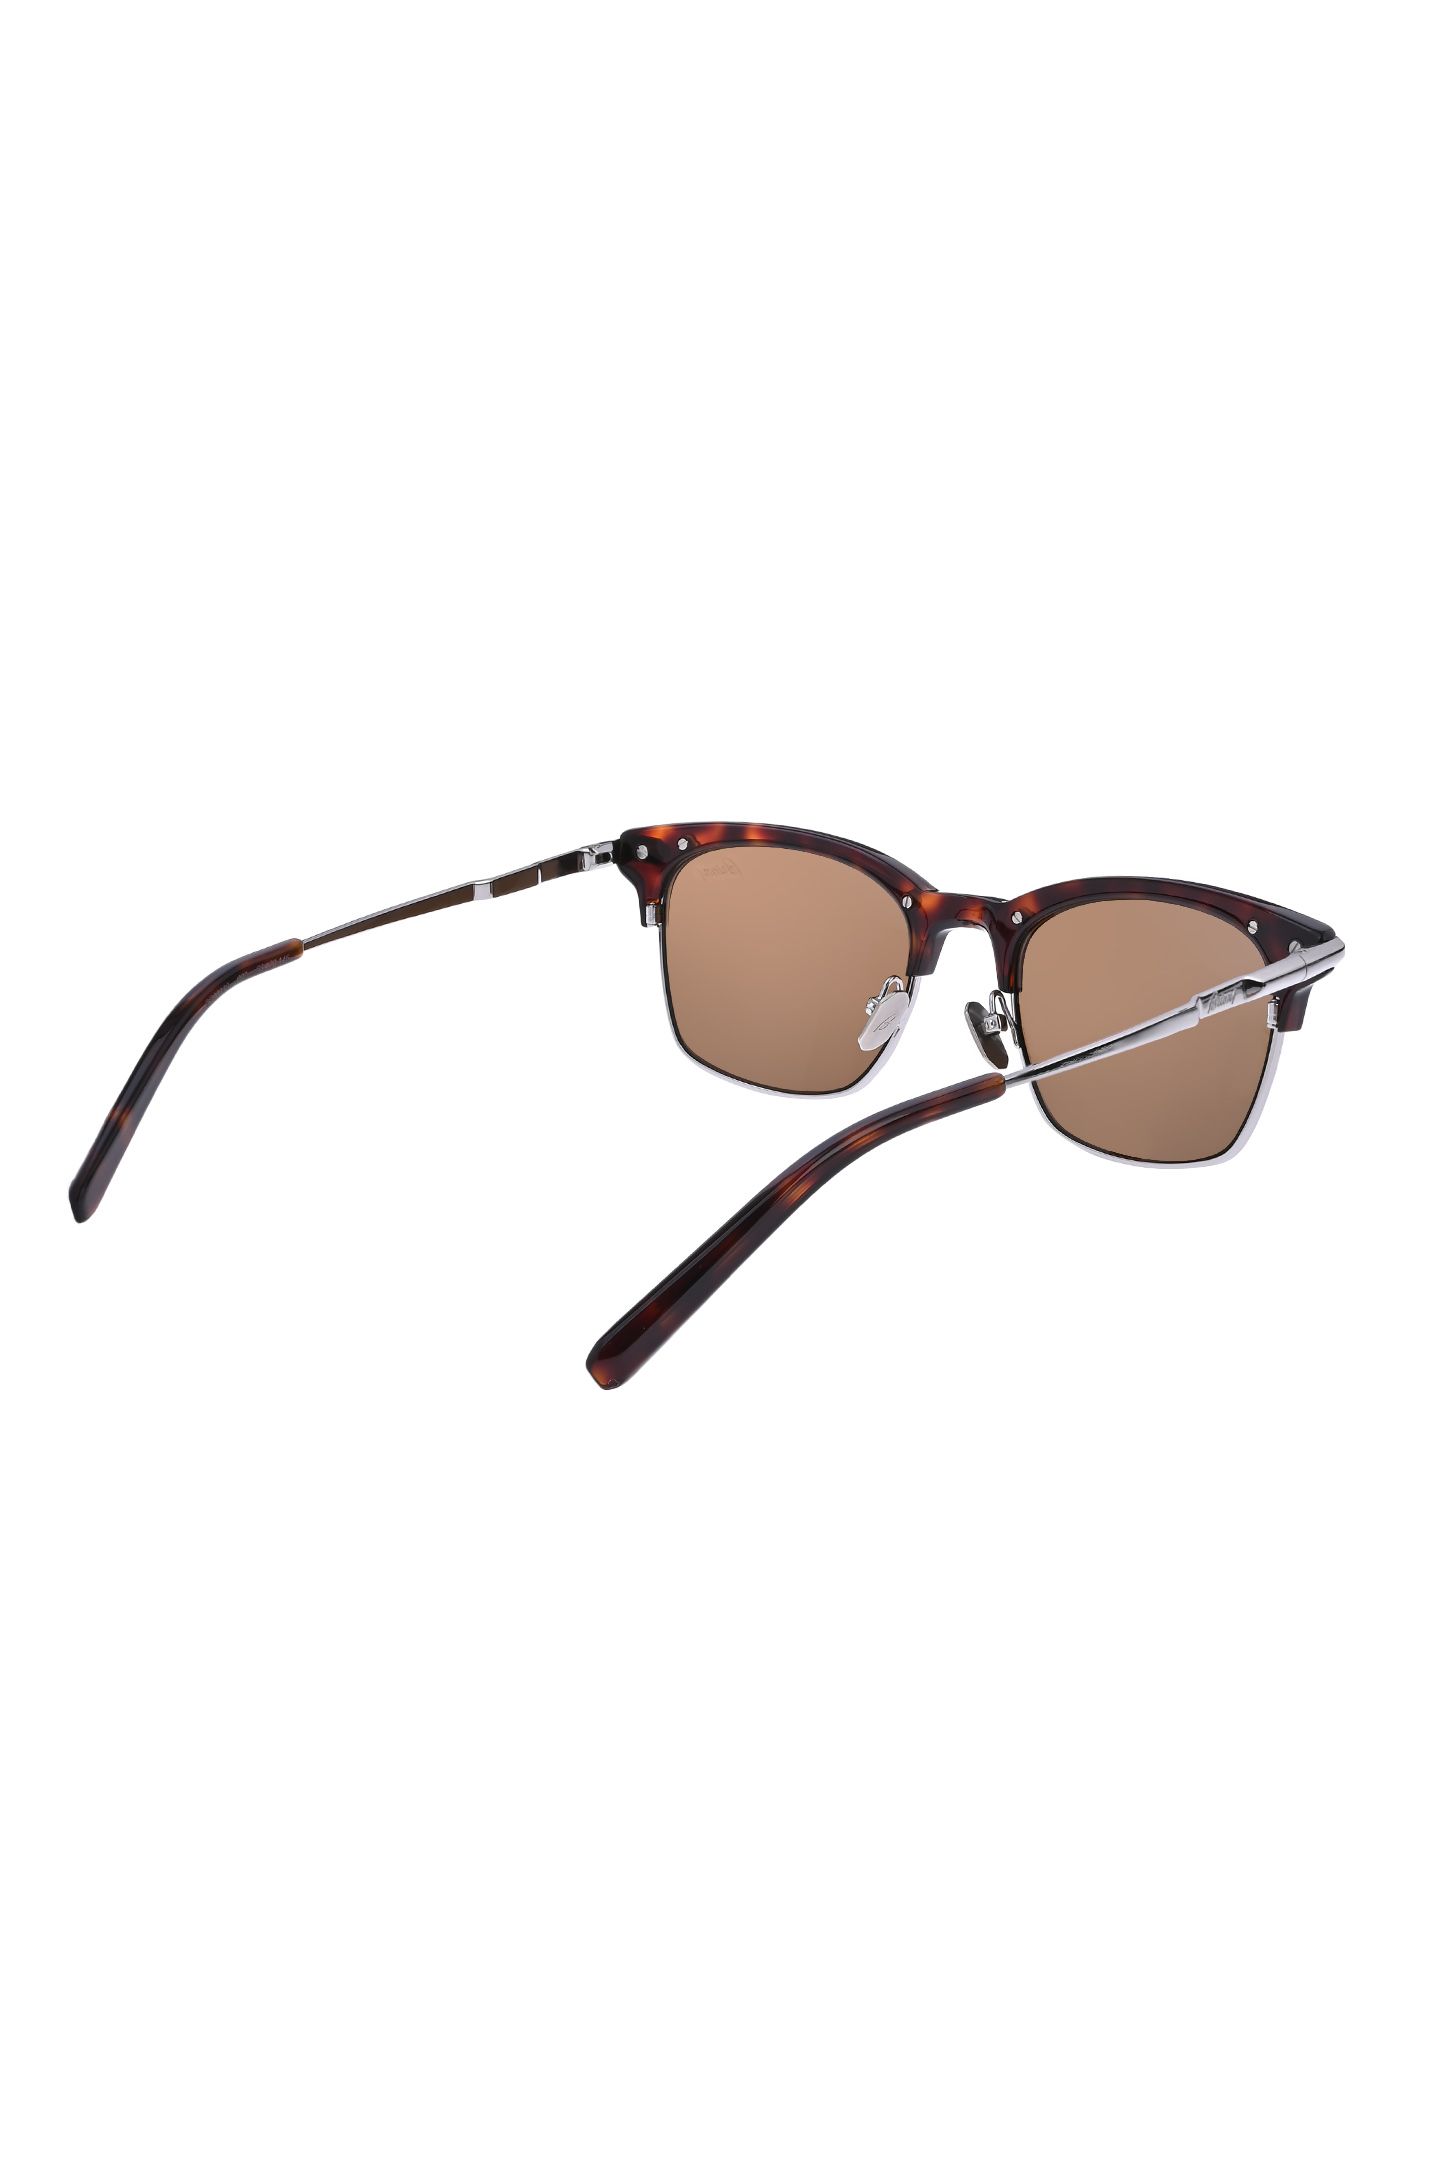 Солнцезащитные очки BRIONI ODE600 P3ZAC, цвет: Коричневый, Мужской